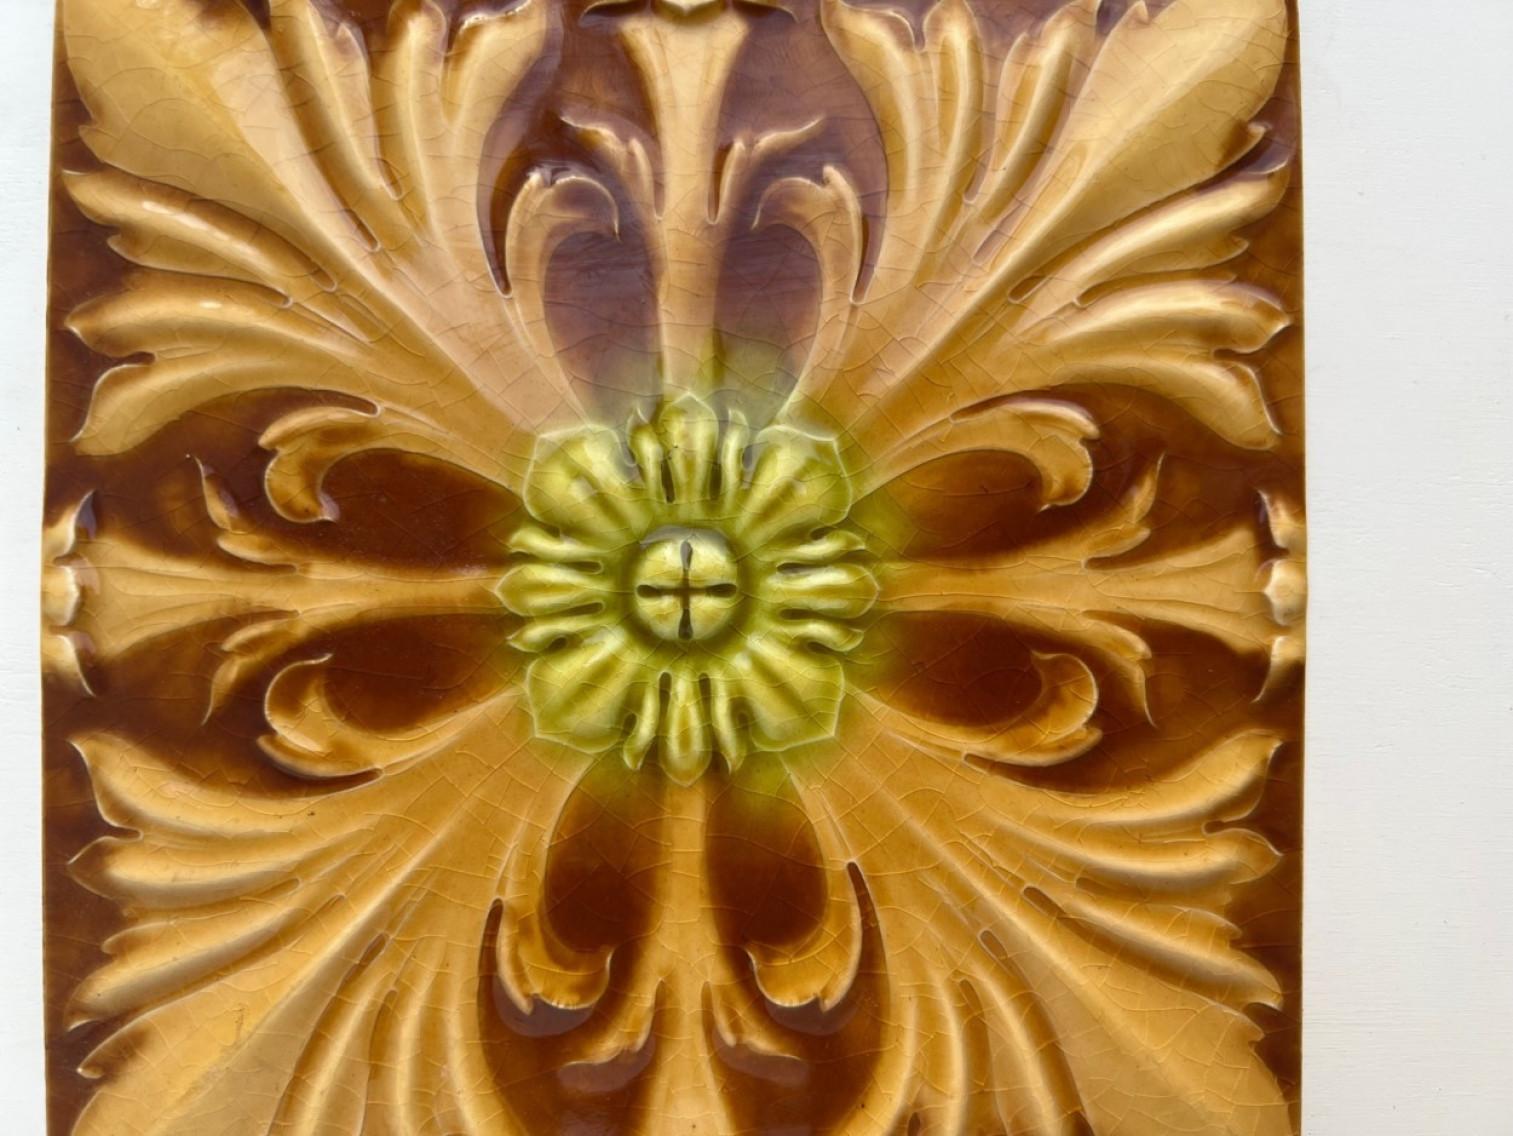 1 des 60 carreaux faits à la main dans de riches couleurs brunes et jaunes émaillées. Fabriqué vers 1920 par Gilliot Hemiksem, Belgique.
Ces carreaux seraient charmants exposés sur des chevalets, encadrés ou incorporés dans une conception de